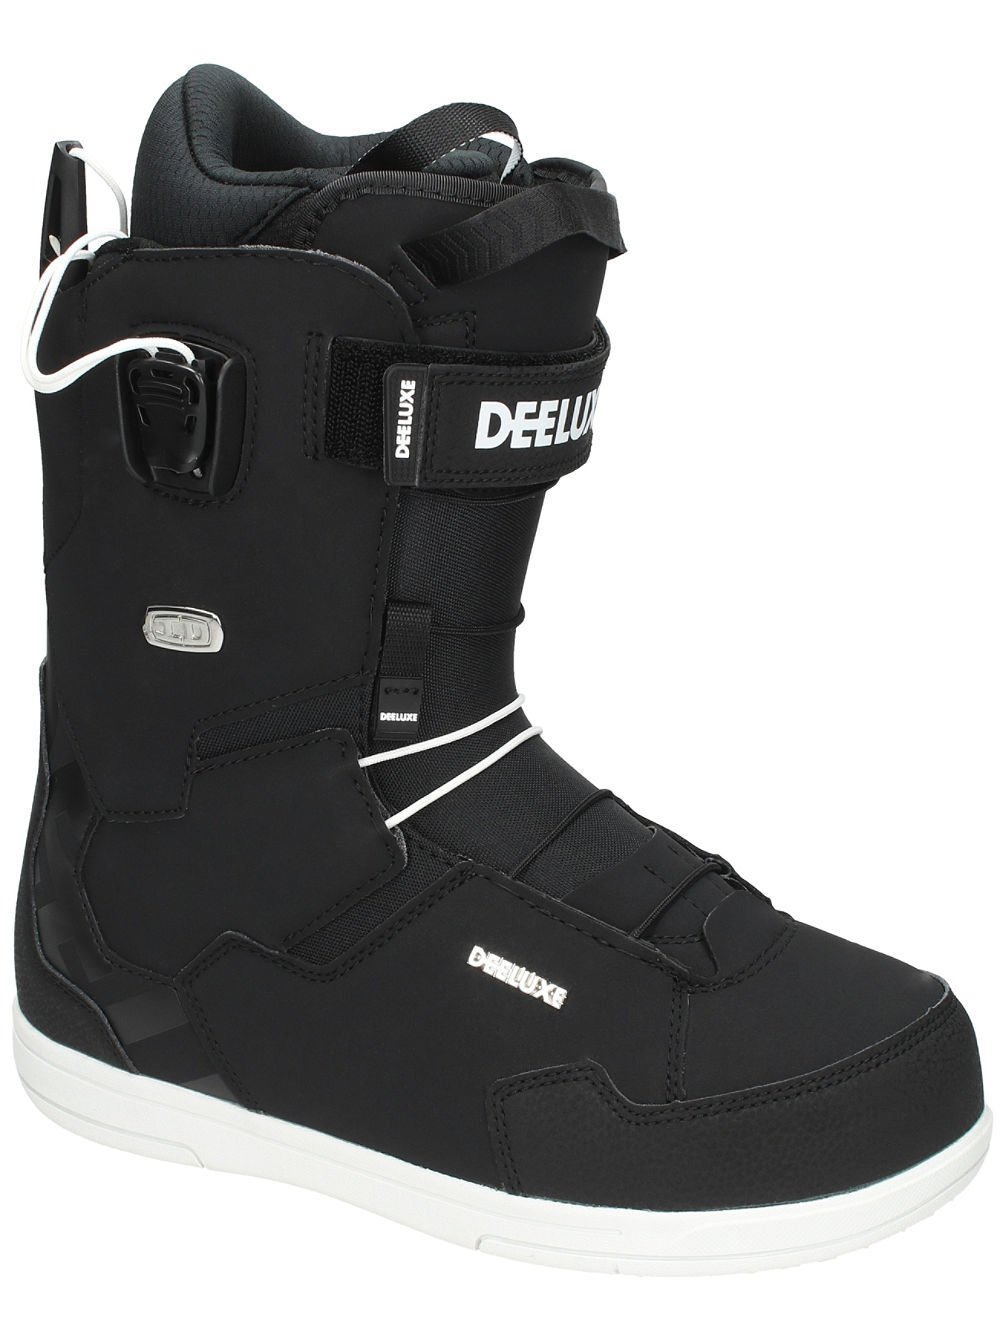 Team ID PF Snowboard-Boots